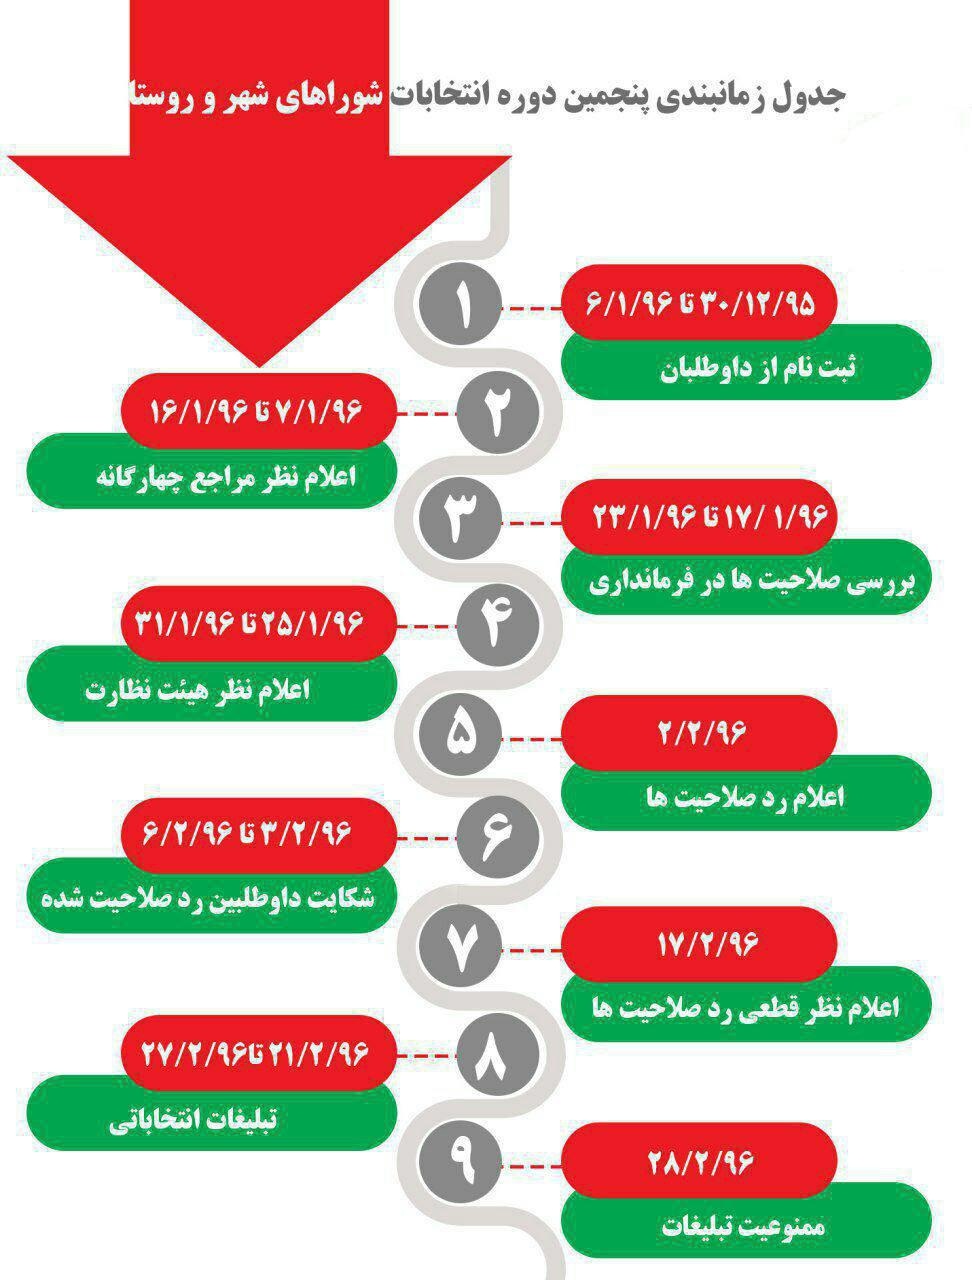 زمانبندی برگزاری انتخابات شوراهای شهر و روستا +اینفوگرافیک